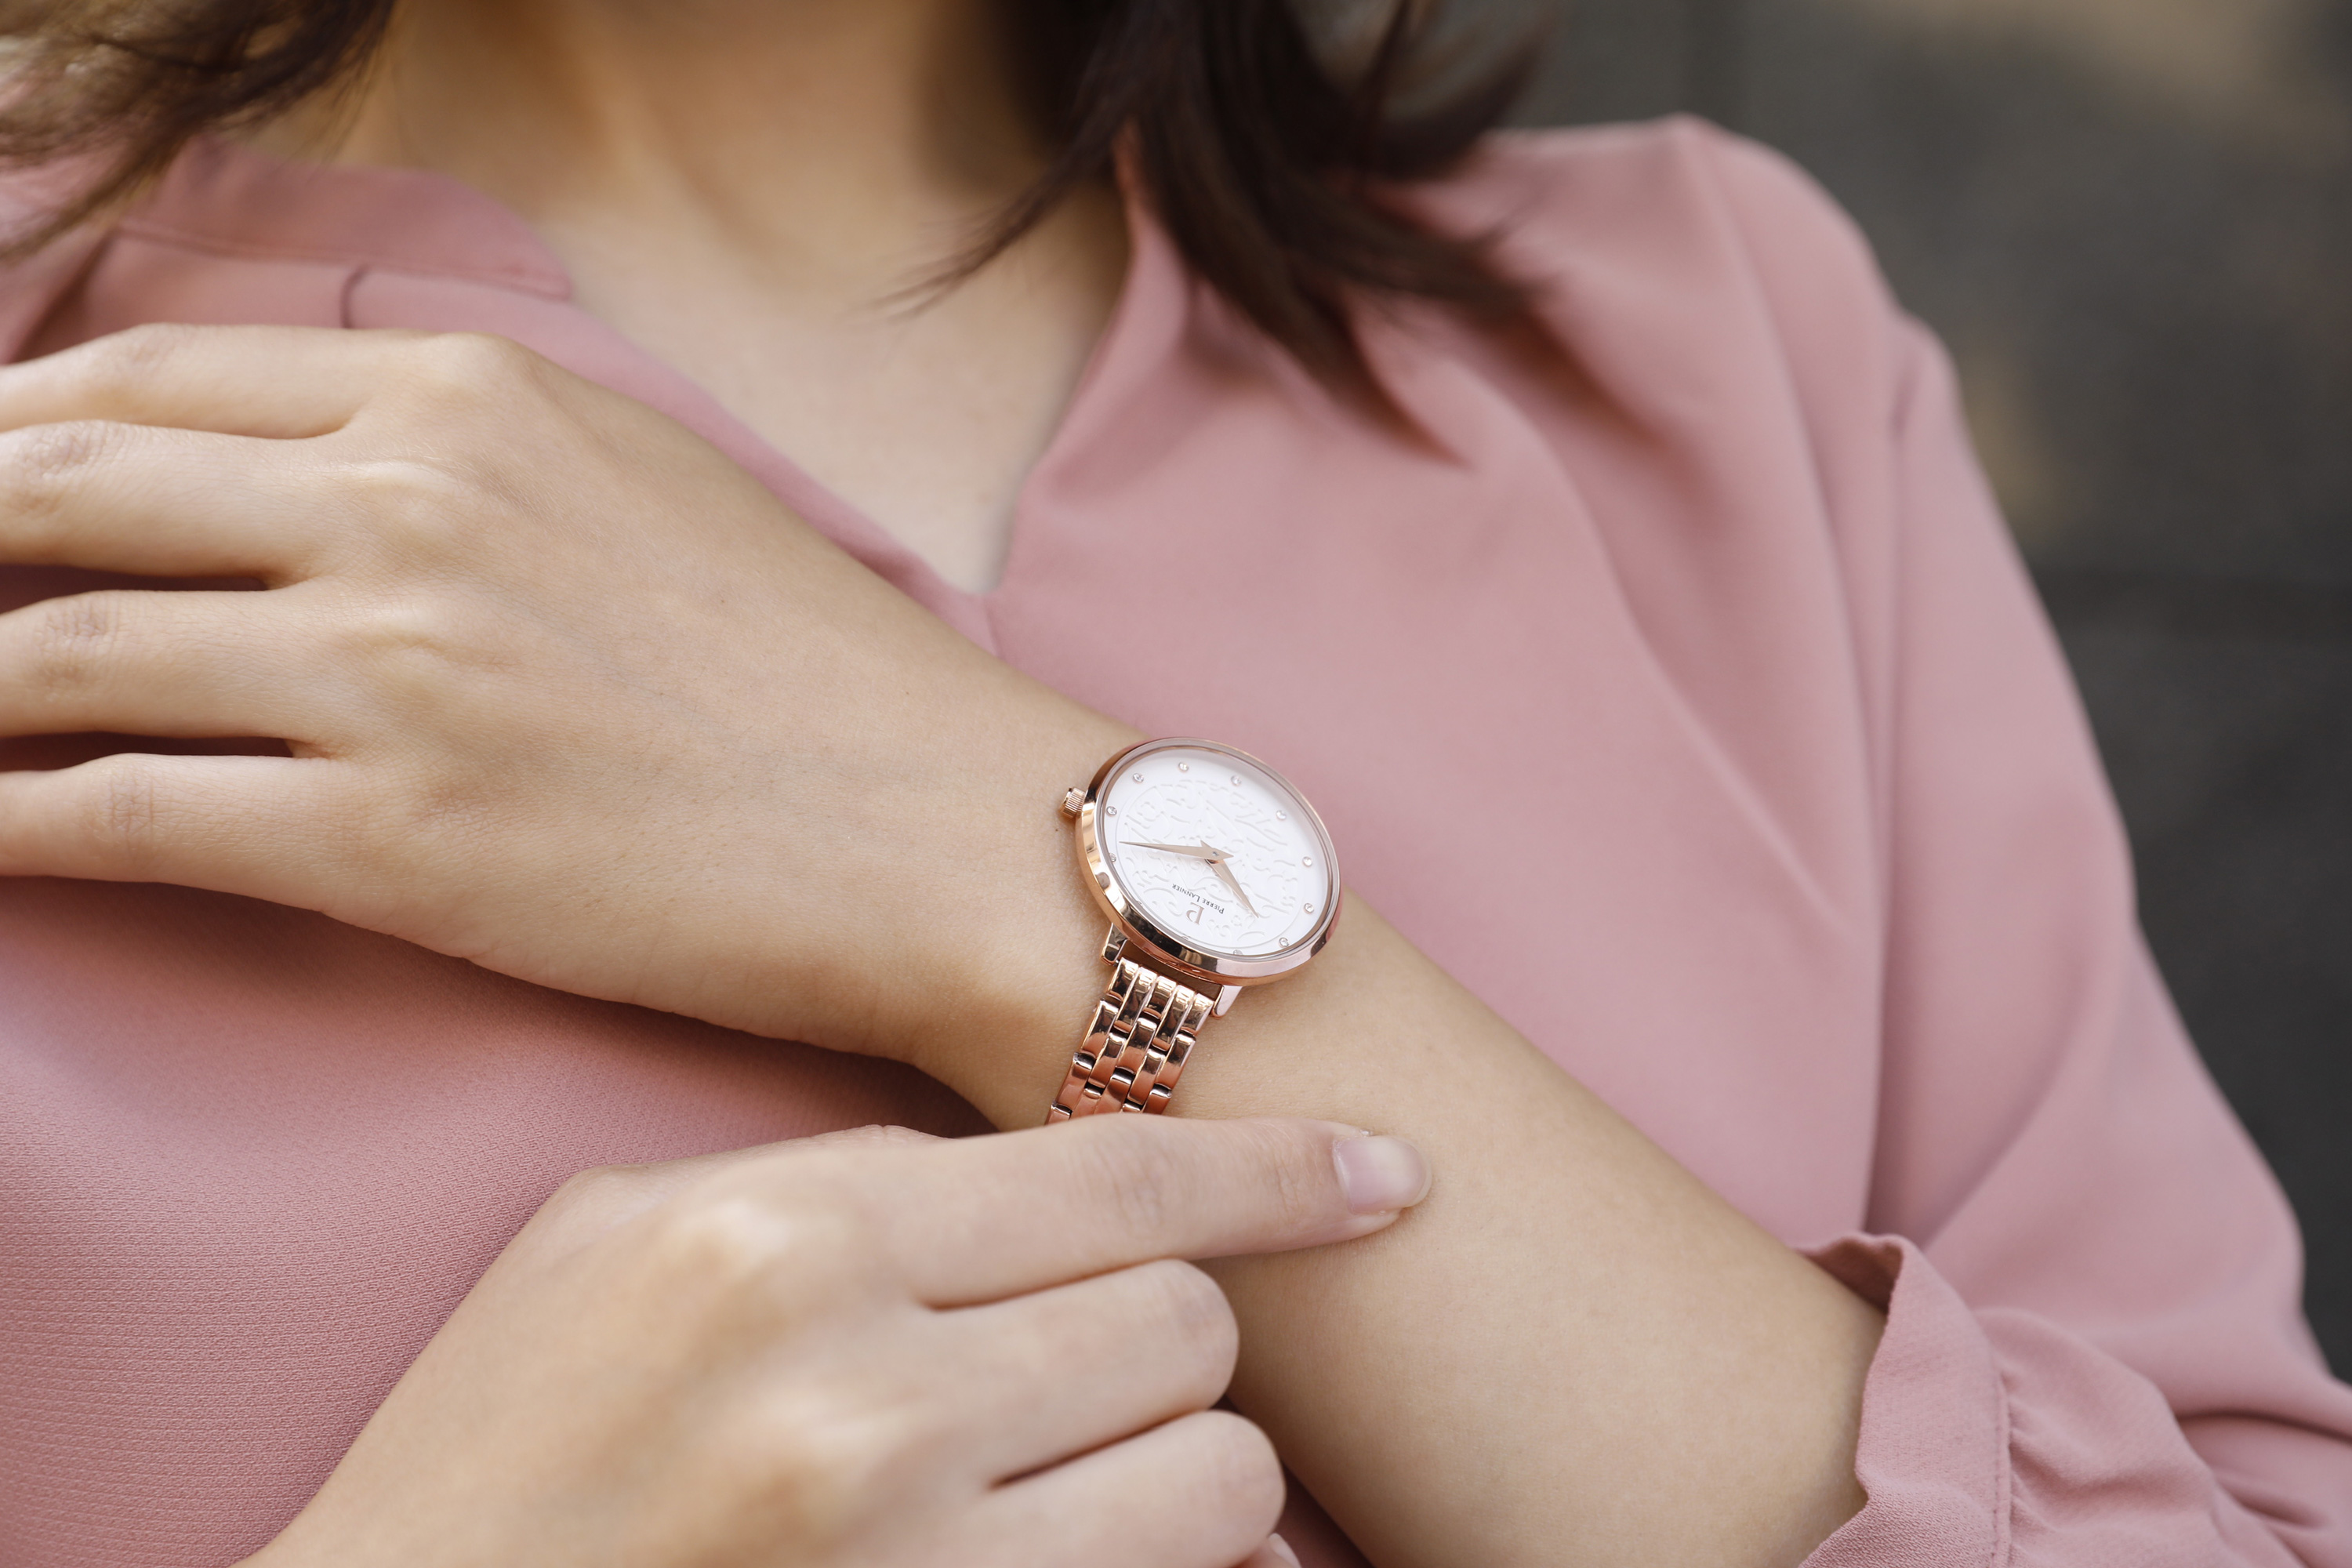 時間を見るたびにあなたの想いを感じる 実用的でかわいいデザインの腕時計